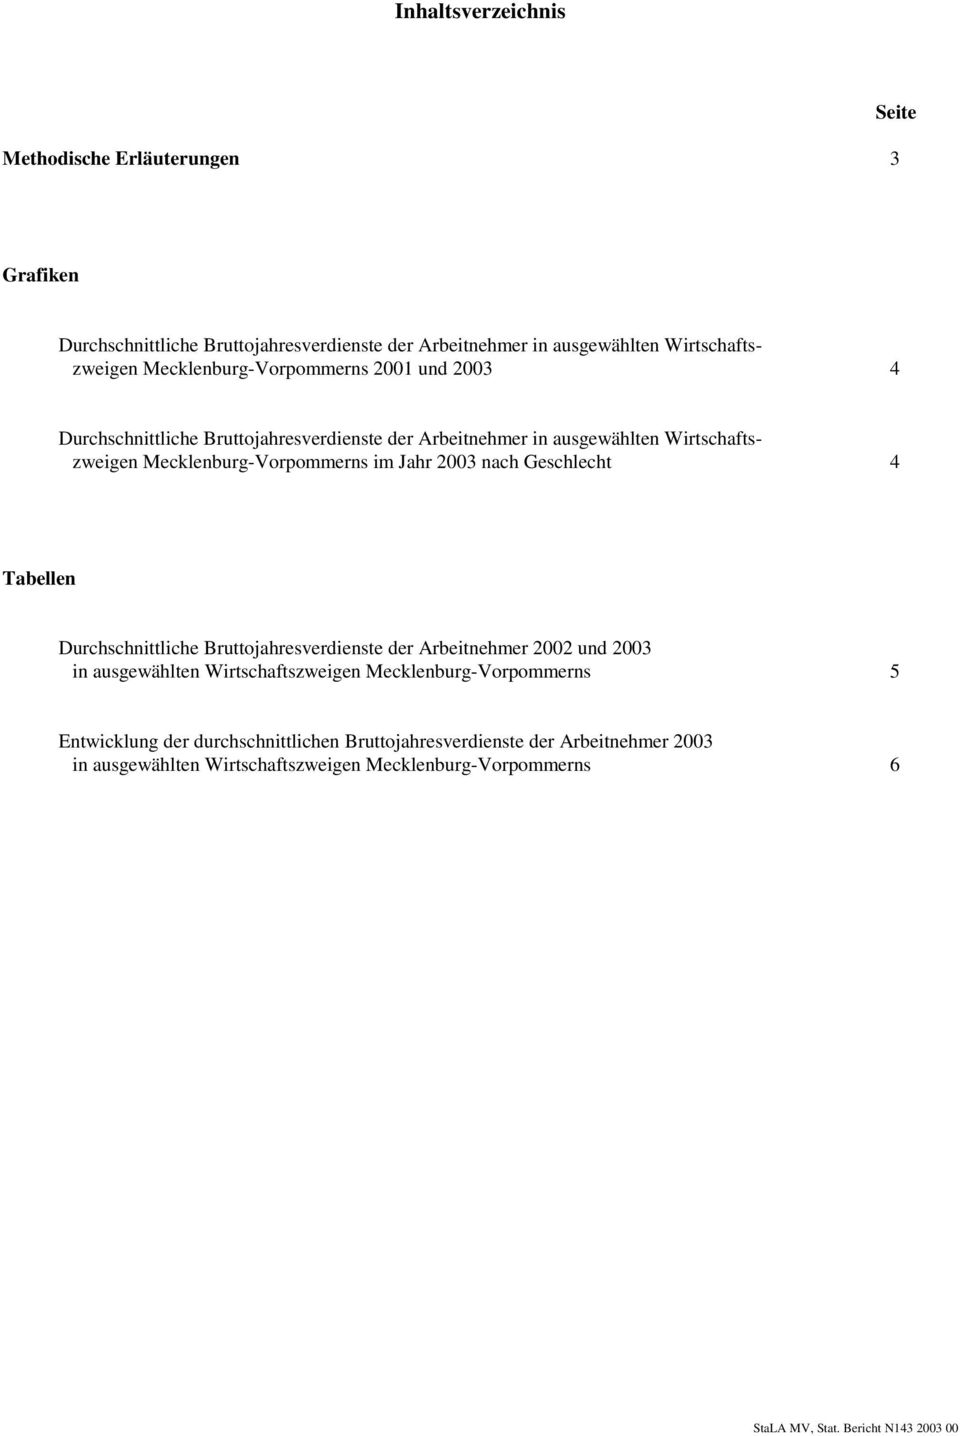 Arbeitnehmer in ausgewählten Wirtschaftszweigen Mecklenburg-Vorpommerns im Jahr 2003 nach Geschlecht 4 Tabellen